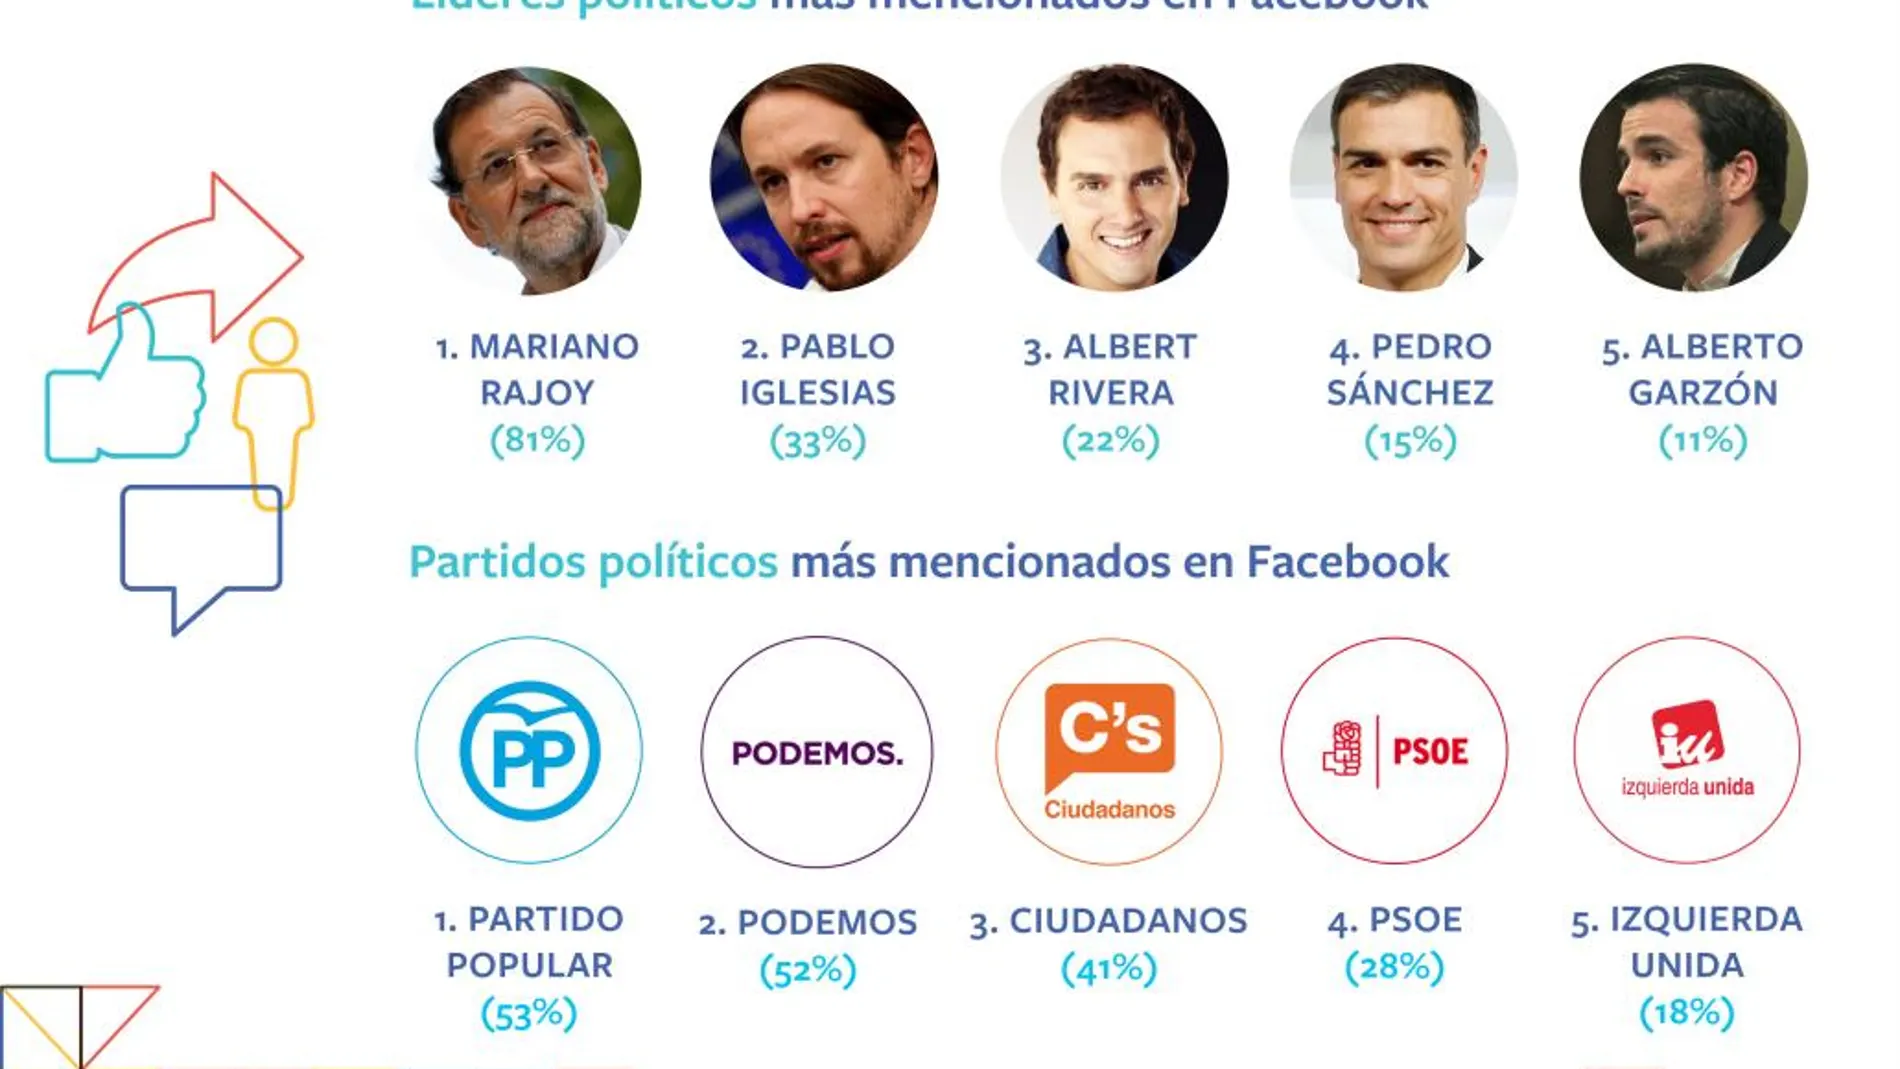 Rajoy se impone en Facebook